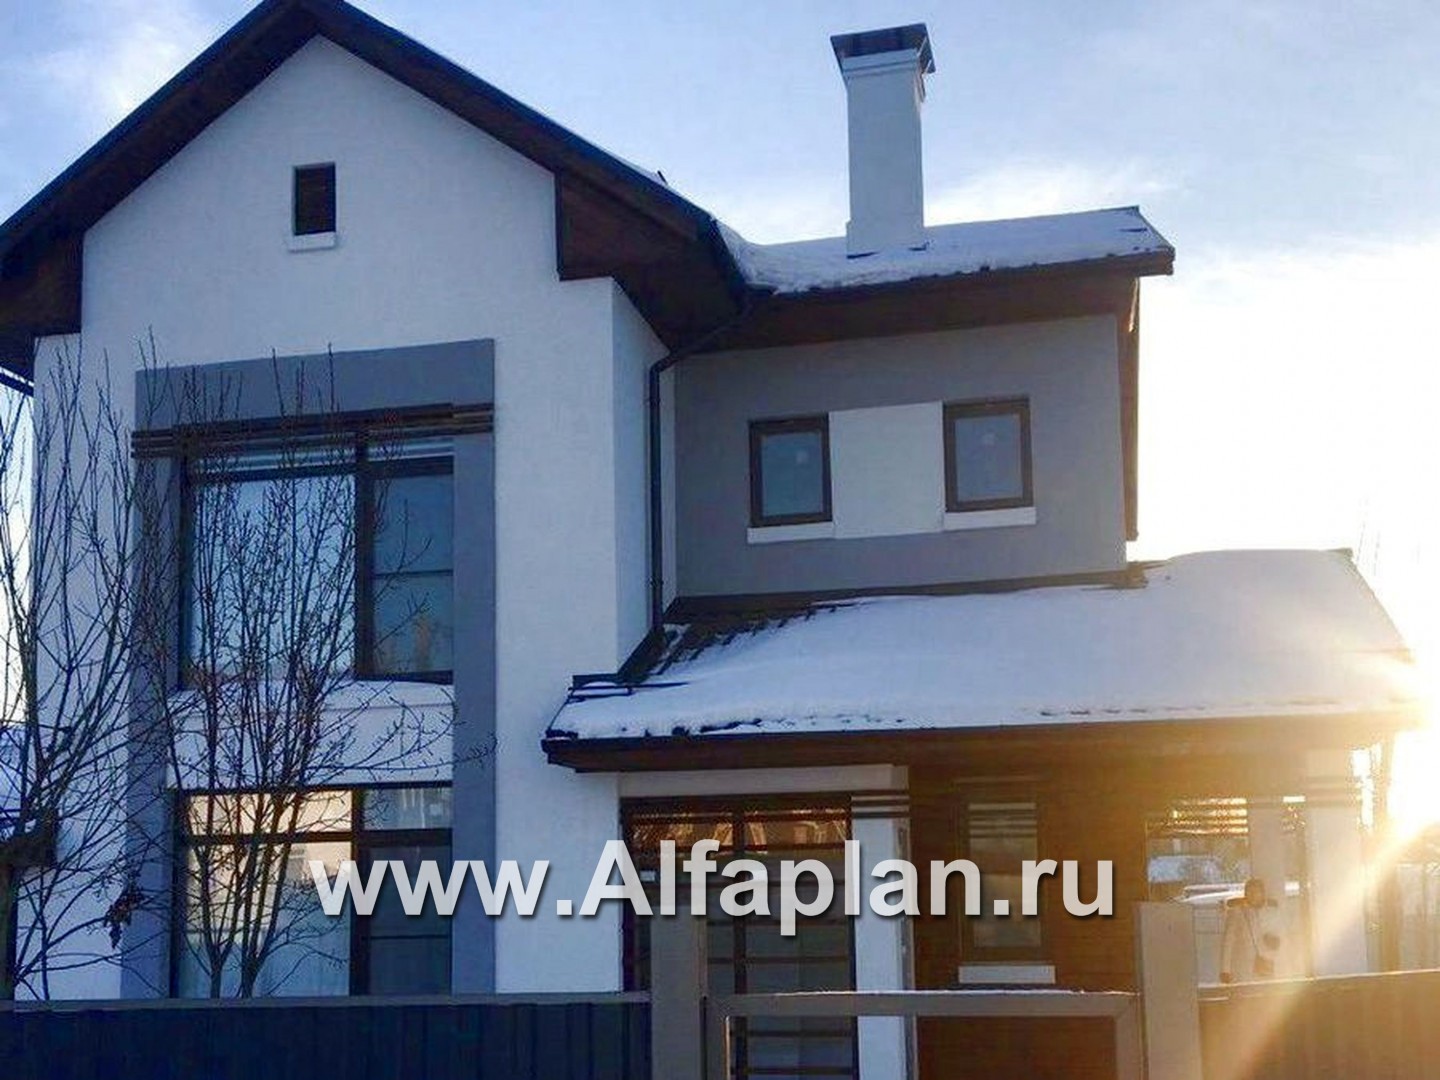 Проекты домов Альфаплан - «Каюткомпания» - экономичный дом для небольшой семьи и маленького участка - дополнительное изображение №2